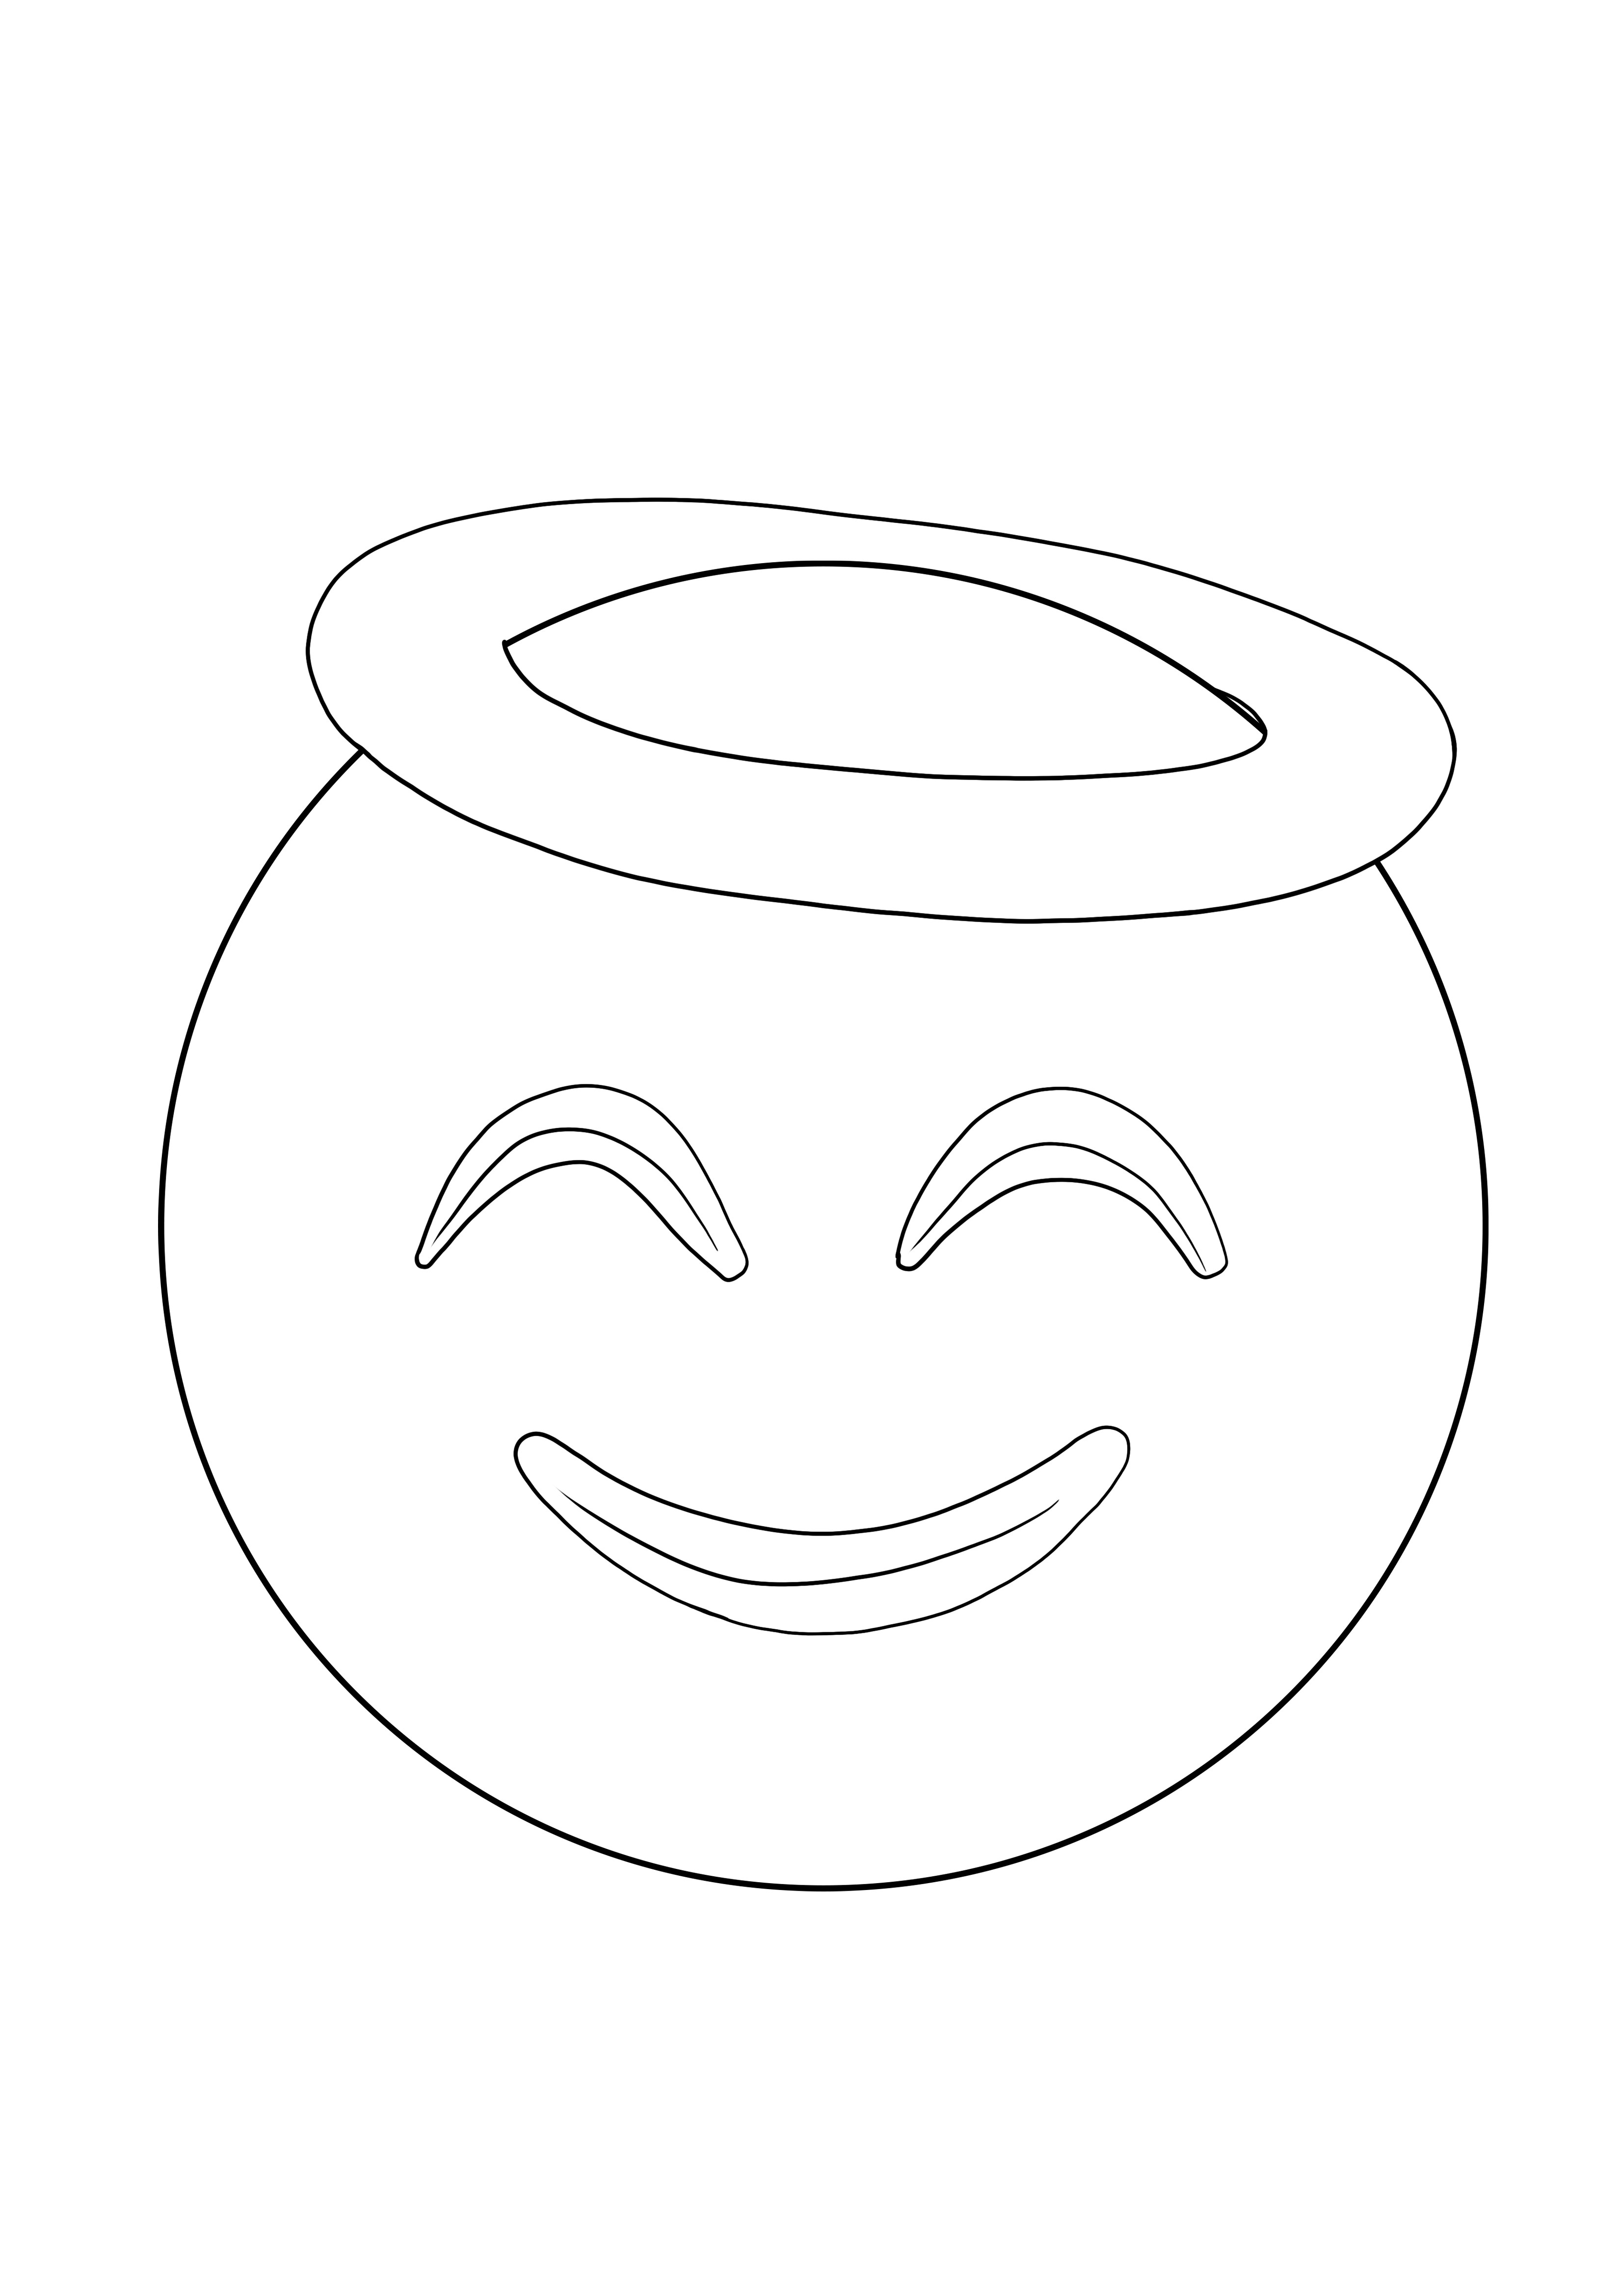 Obrazek do kolorowania uśmiechniętego kręgu do pobrania za darmo